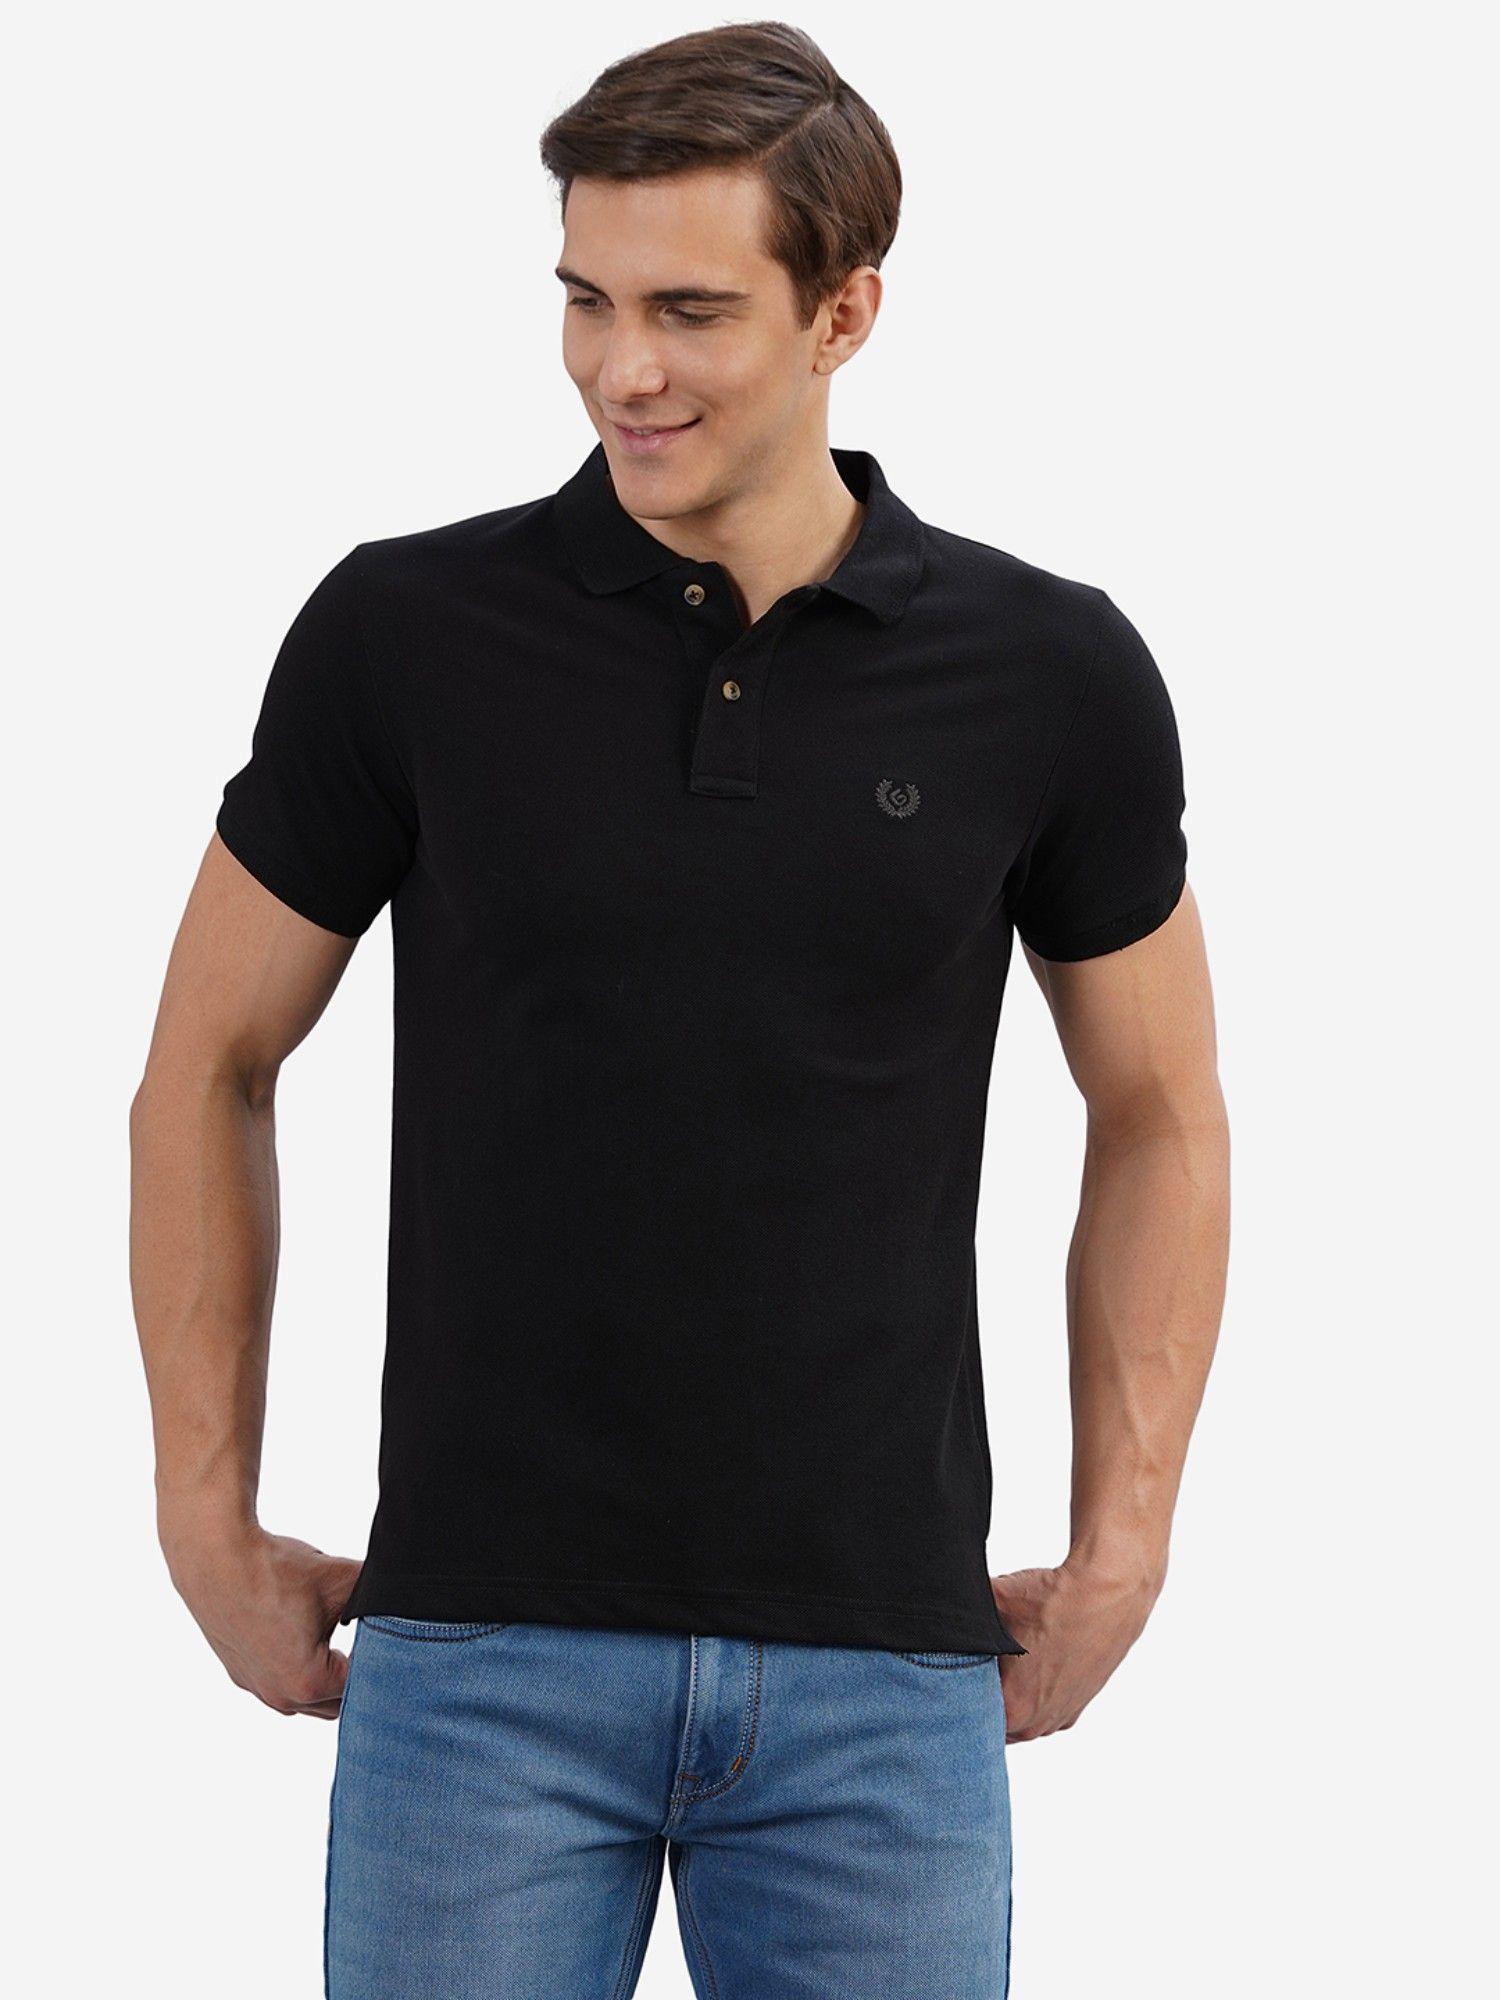 men solid black cotton blend slim fit polo t-shirt